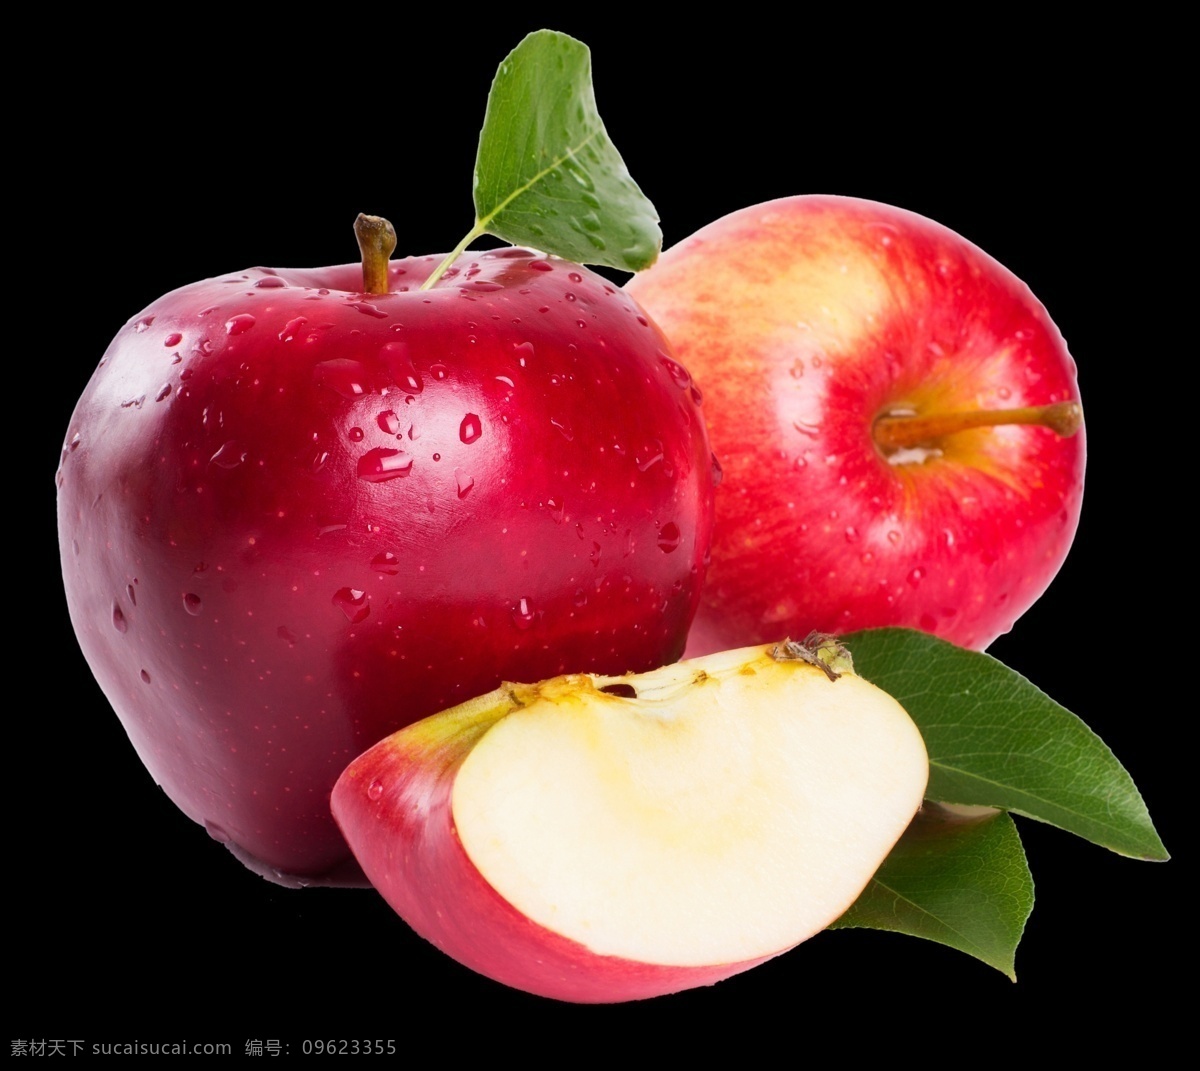 高清 免 扣 苹果 红苹果 果子 果蔬 瓜果 新鲜 免扣 设计素材 水果 水果素材 水果元素 水果图片 png元素 分层 素材组